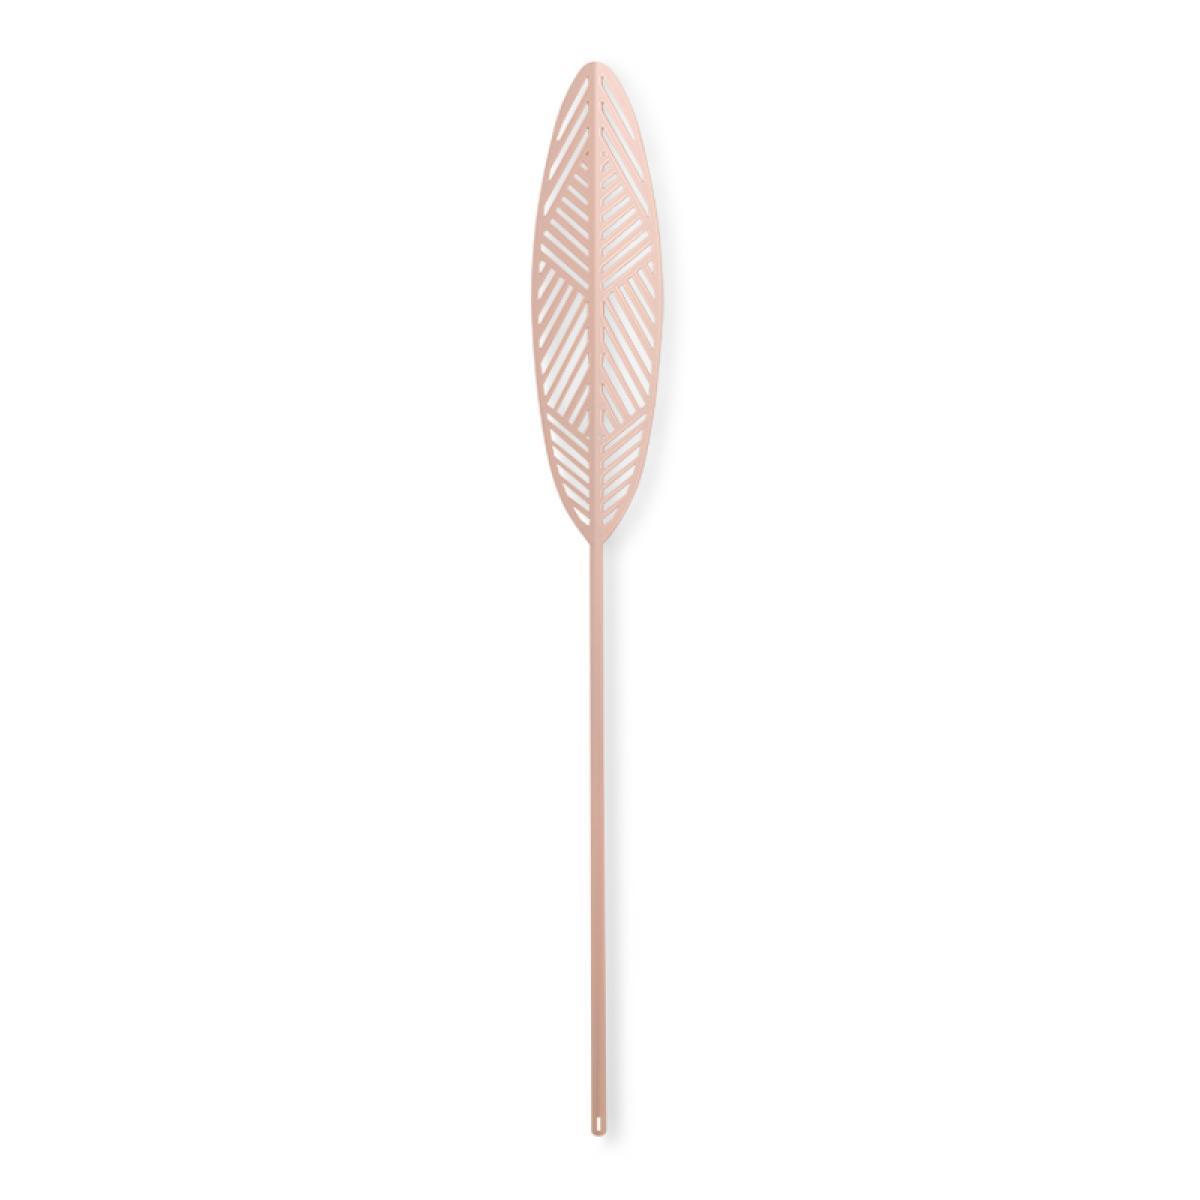 Lucie Kaas Leaflike Silva Metalblad Pink, 41cm